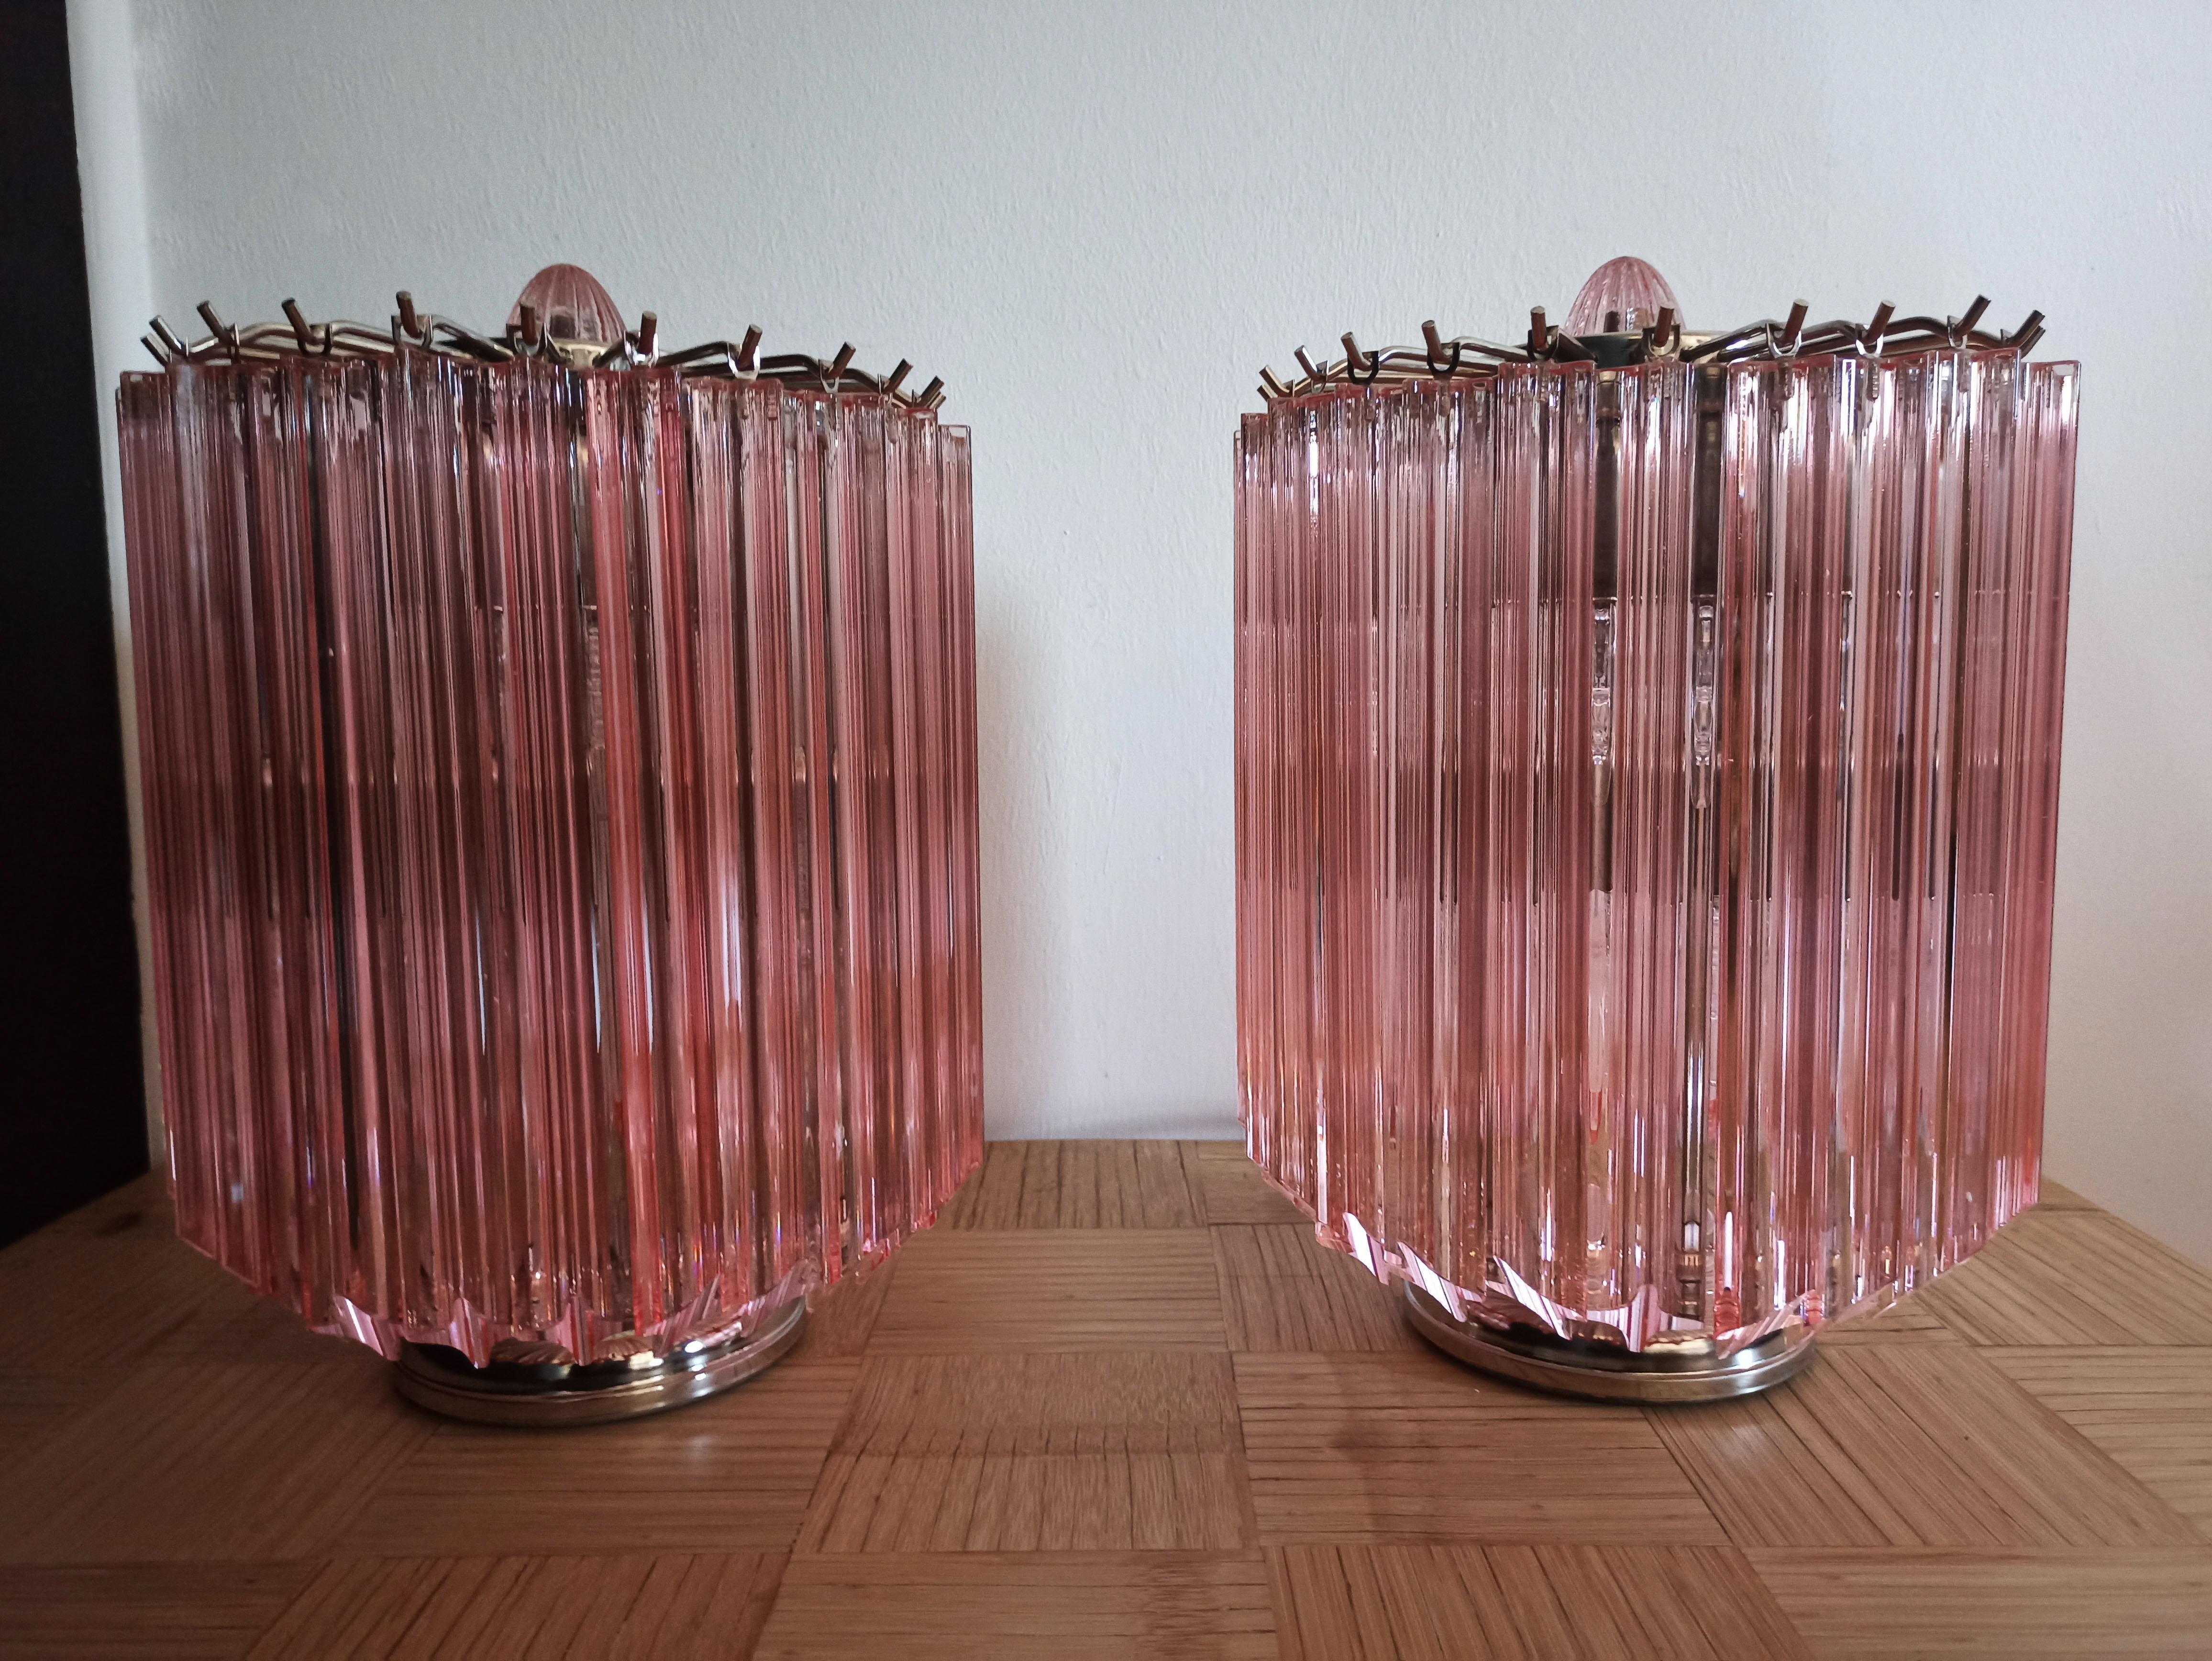 Magnifique paire de lampes de table, 24 Quadriedri roses pour chaque lampe. Élégant objet d'ameublement.
Période : Fin du 20e siècle
Dimensions : 38 cm de hauteur, 27 cm de diamètre.
Dimension des lunettes : hauteur de 28 cm (11 pouces)
Ampoules